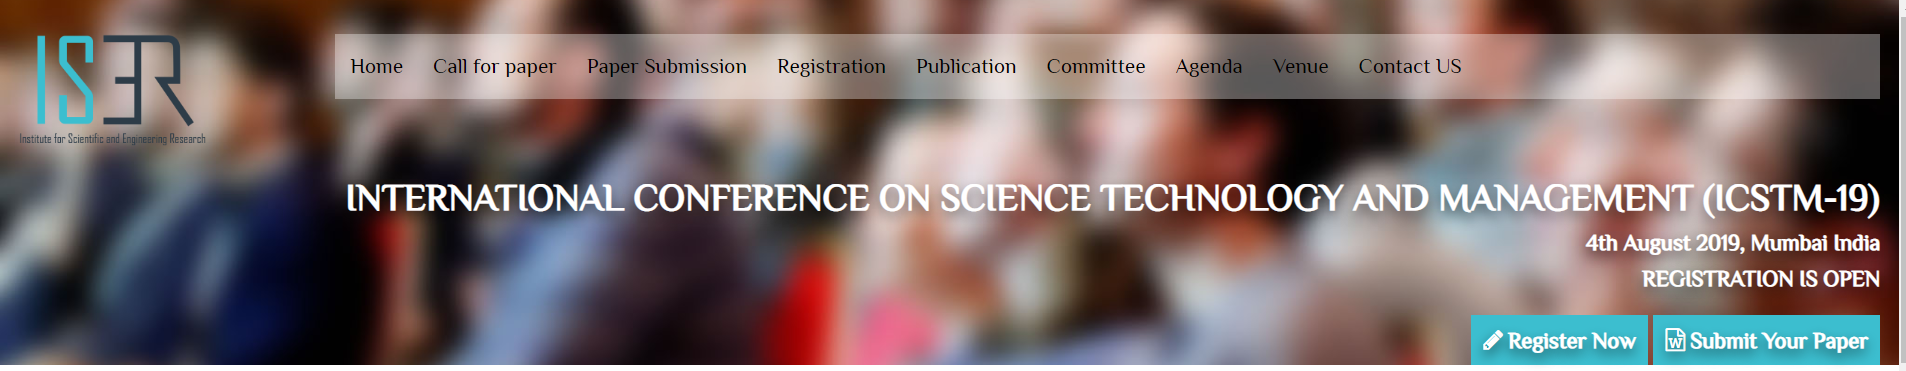 INTERNATIONAL CONFERENCE ON SCIENCE TECHNOLOGY AND MANAGEMENT (ICSTM-19), Mumbai, Maharashtra, India